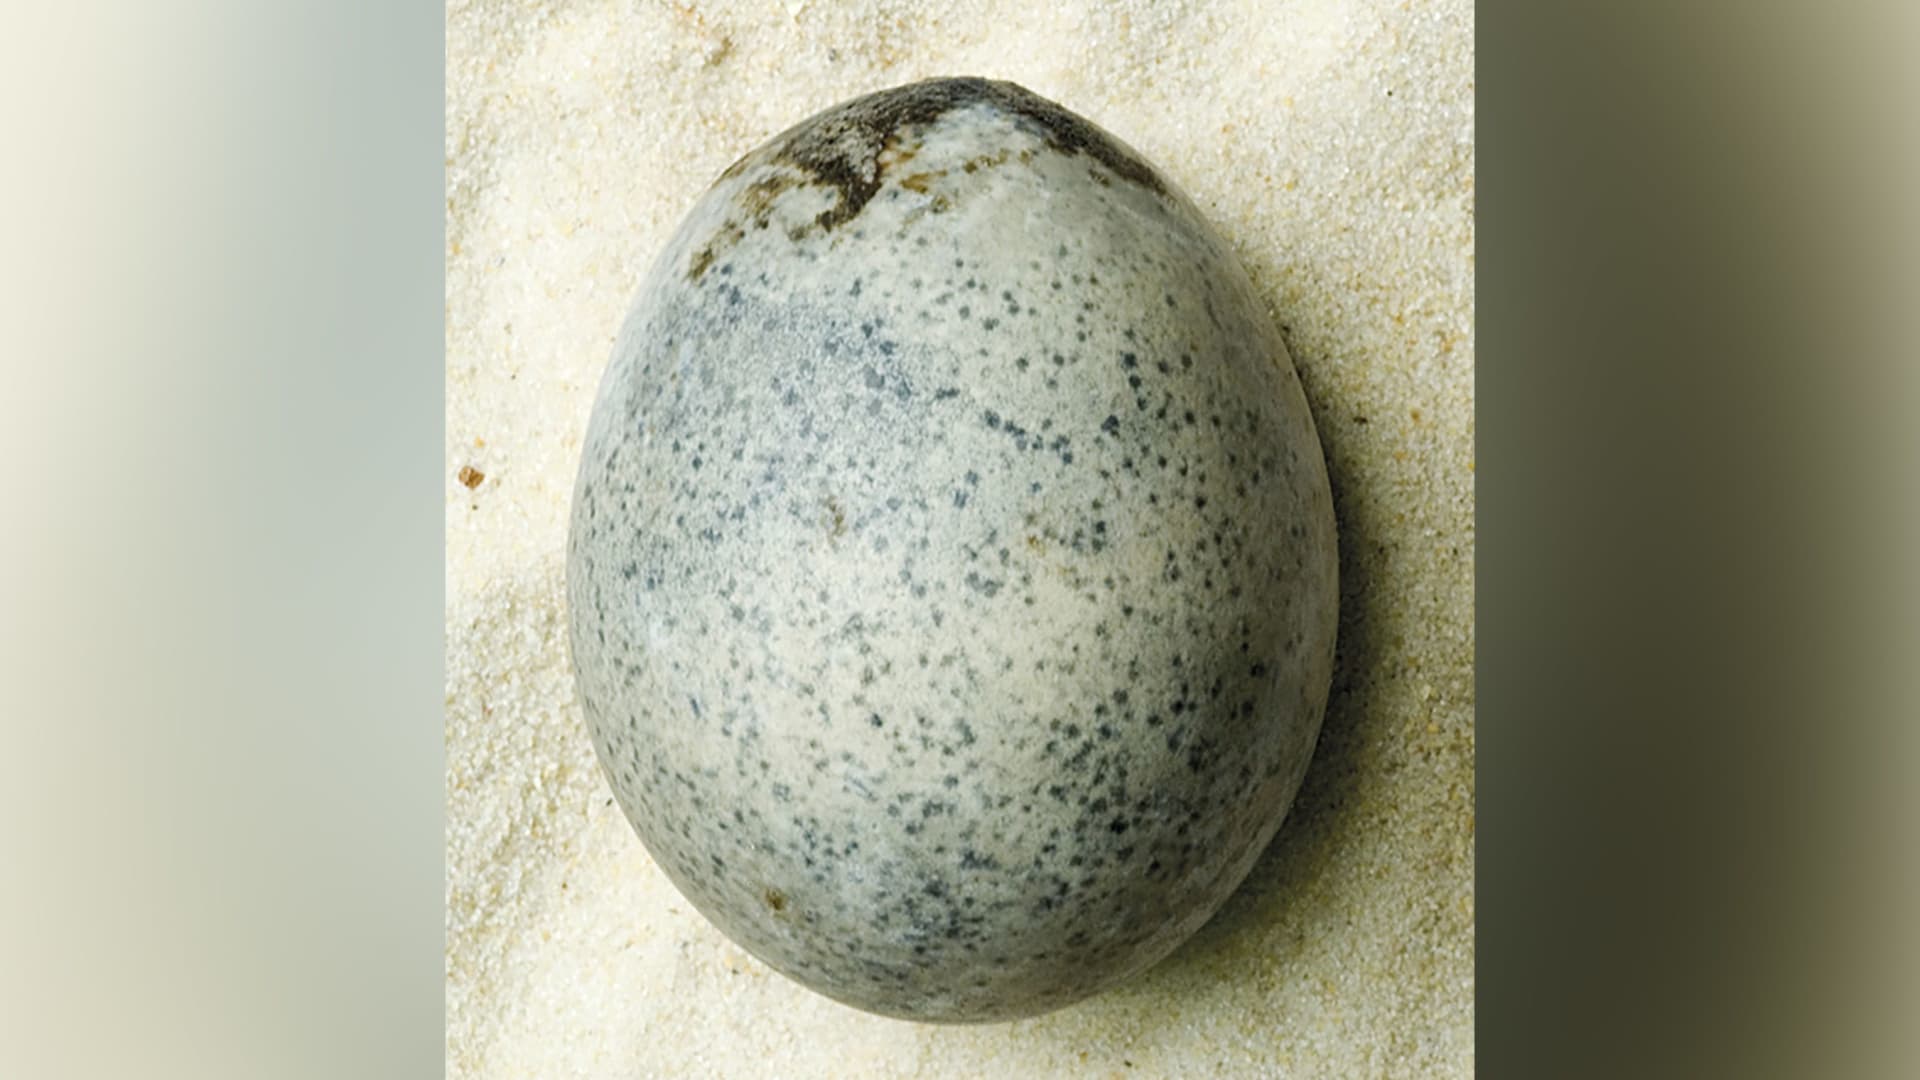 اكتشاف "مذهل".. العثور على بيضة رومانية لا تزال سليمة في المملكة المتحدة